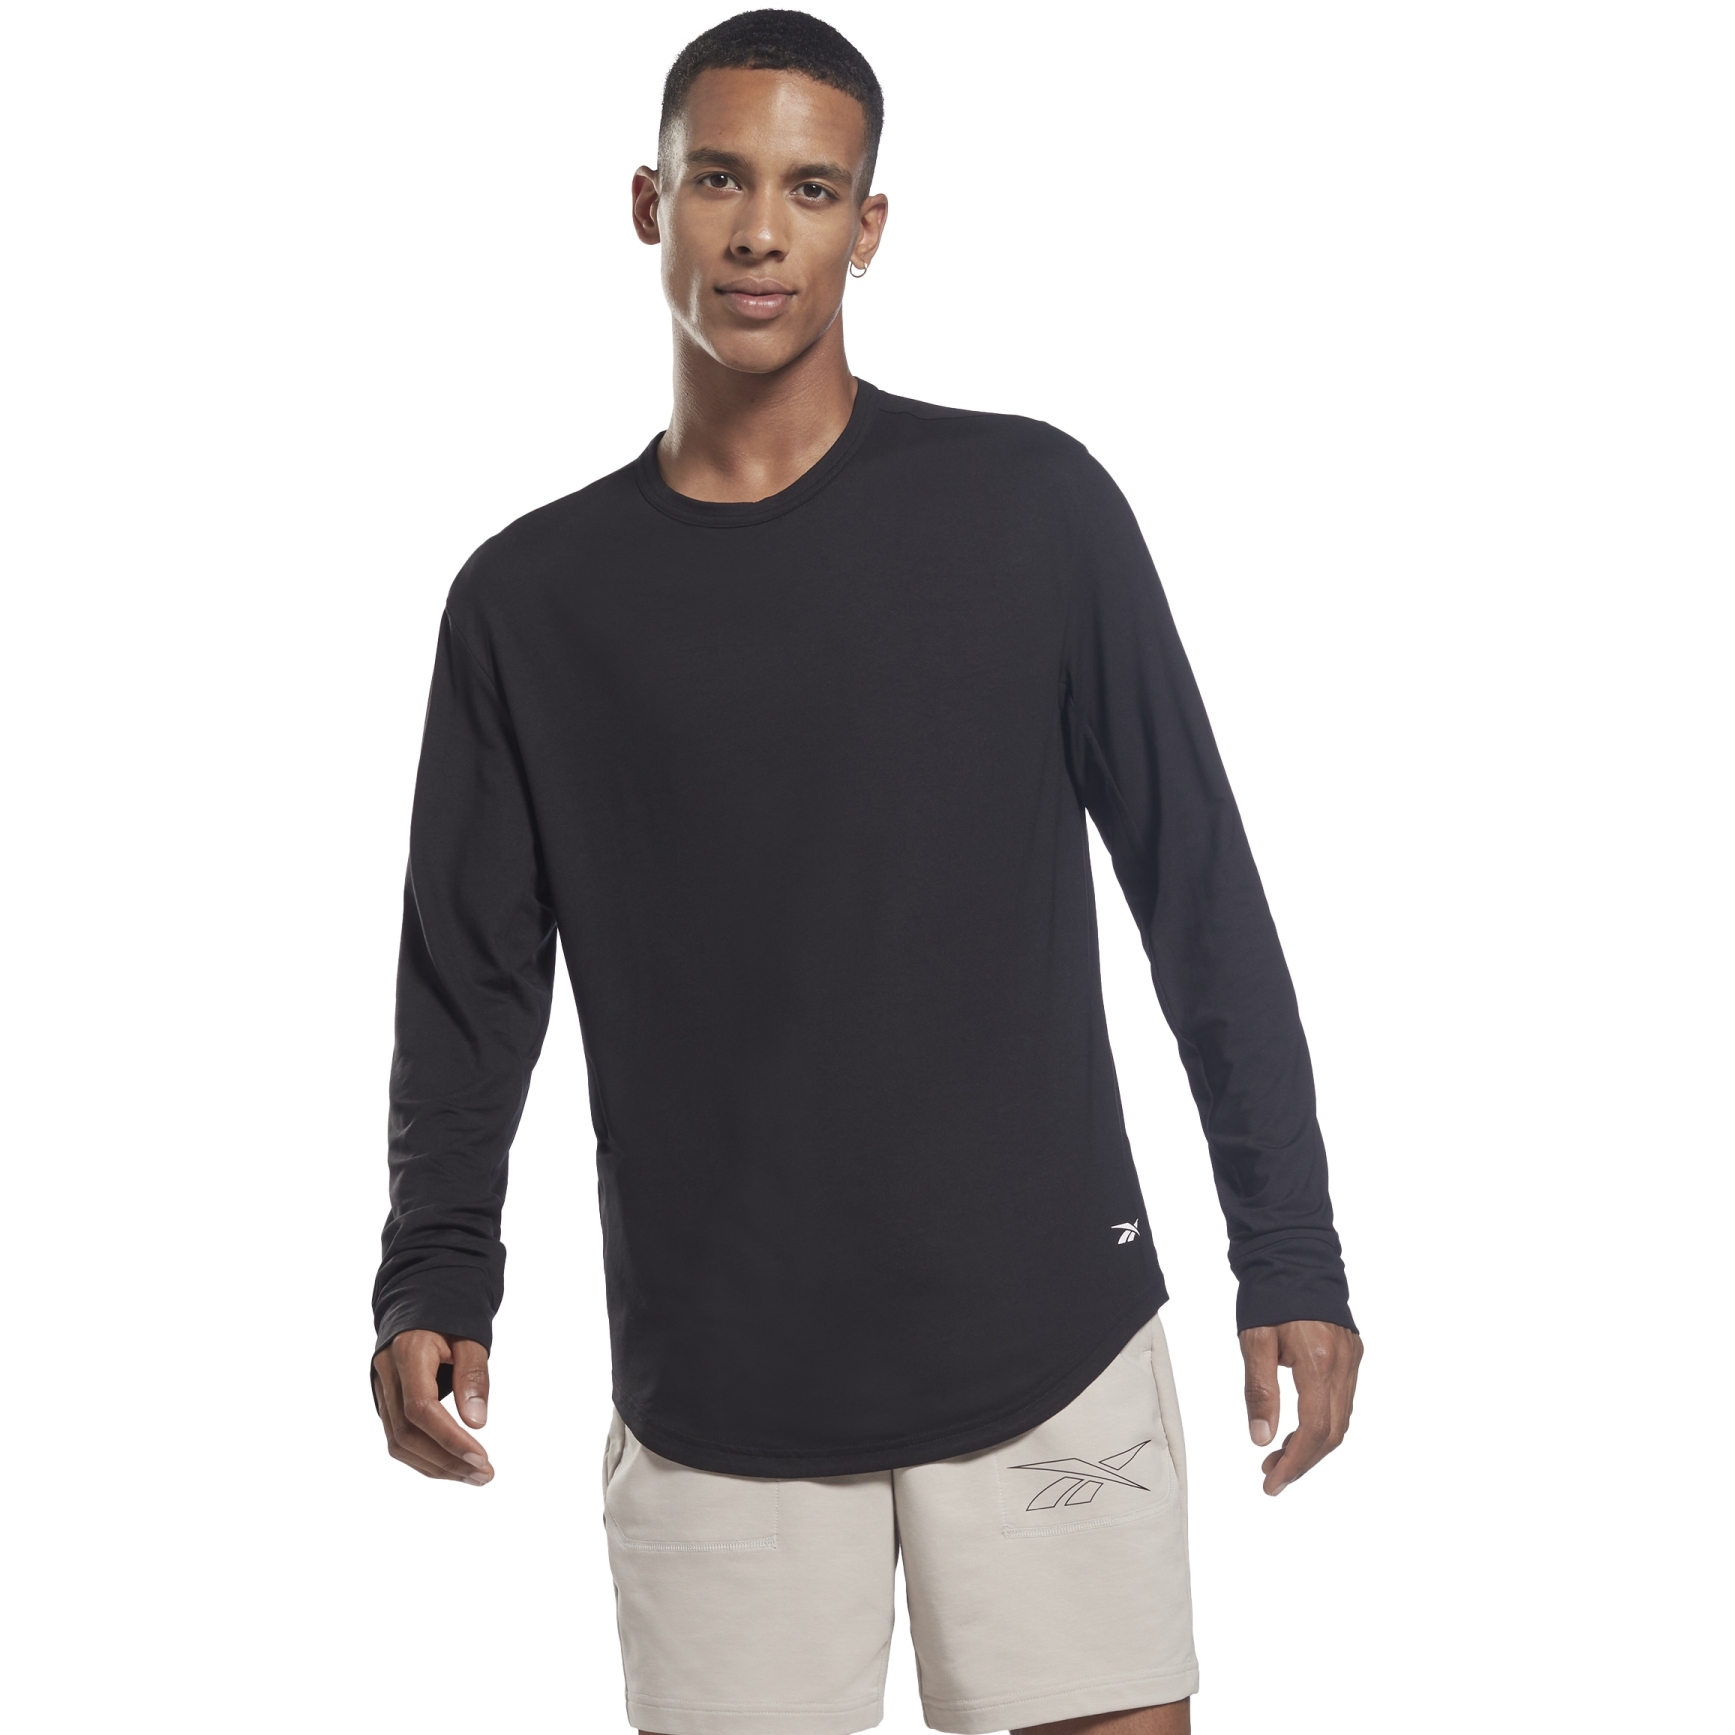 Productfoto van Reebok TS ACTIVCHILL Dreamblend Shirt met lange mouwen Heren - zwart